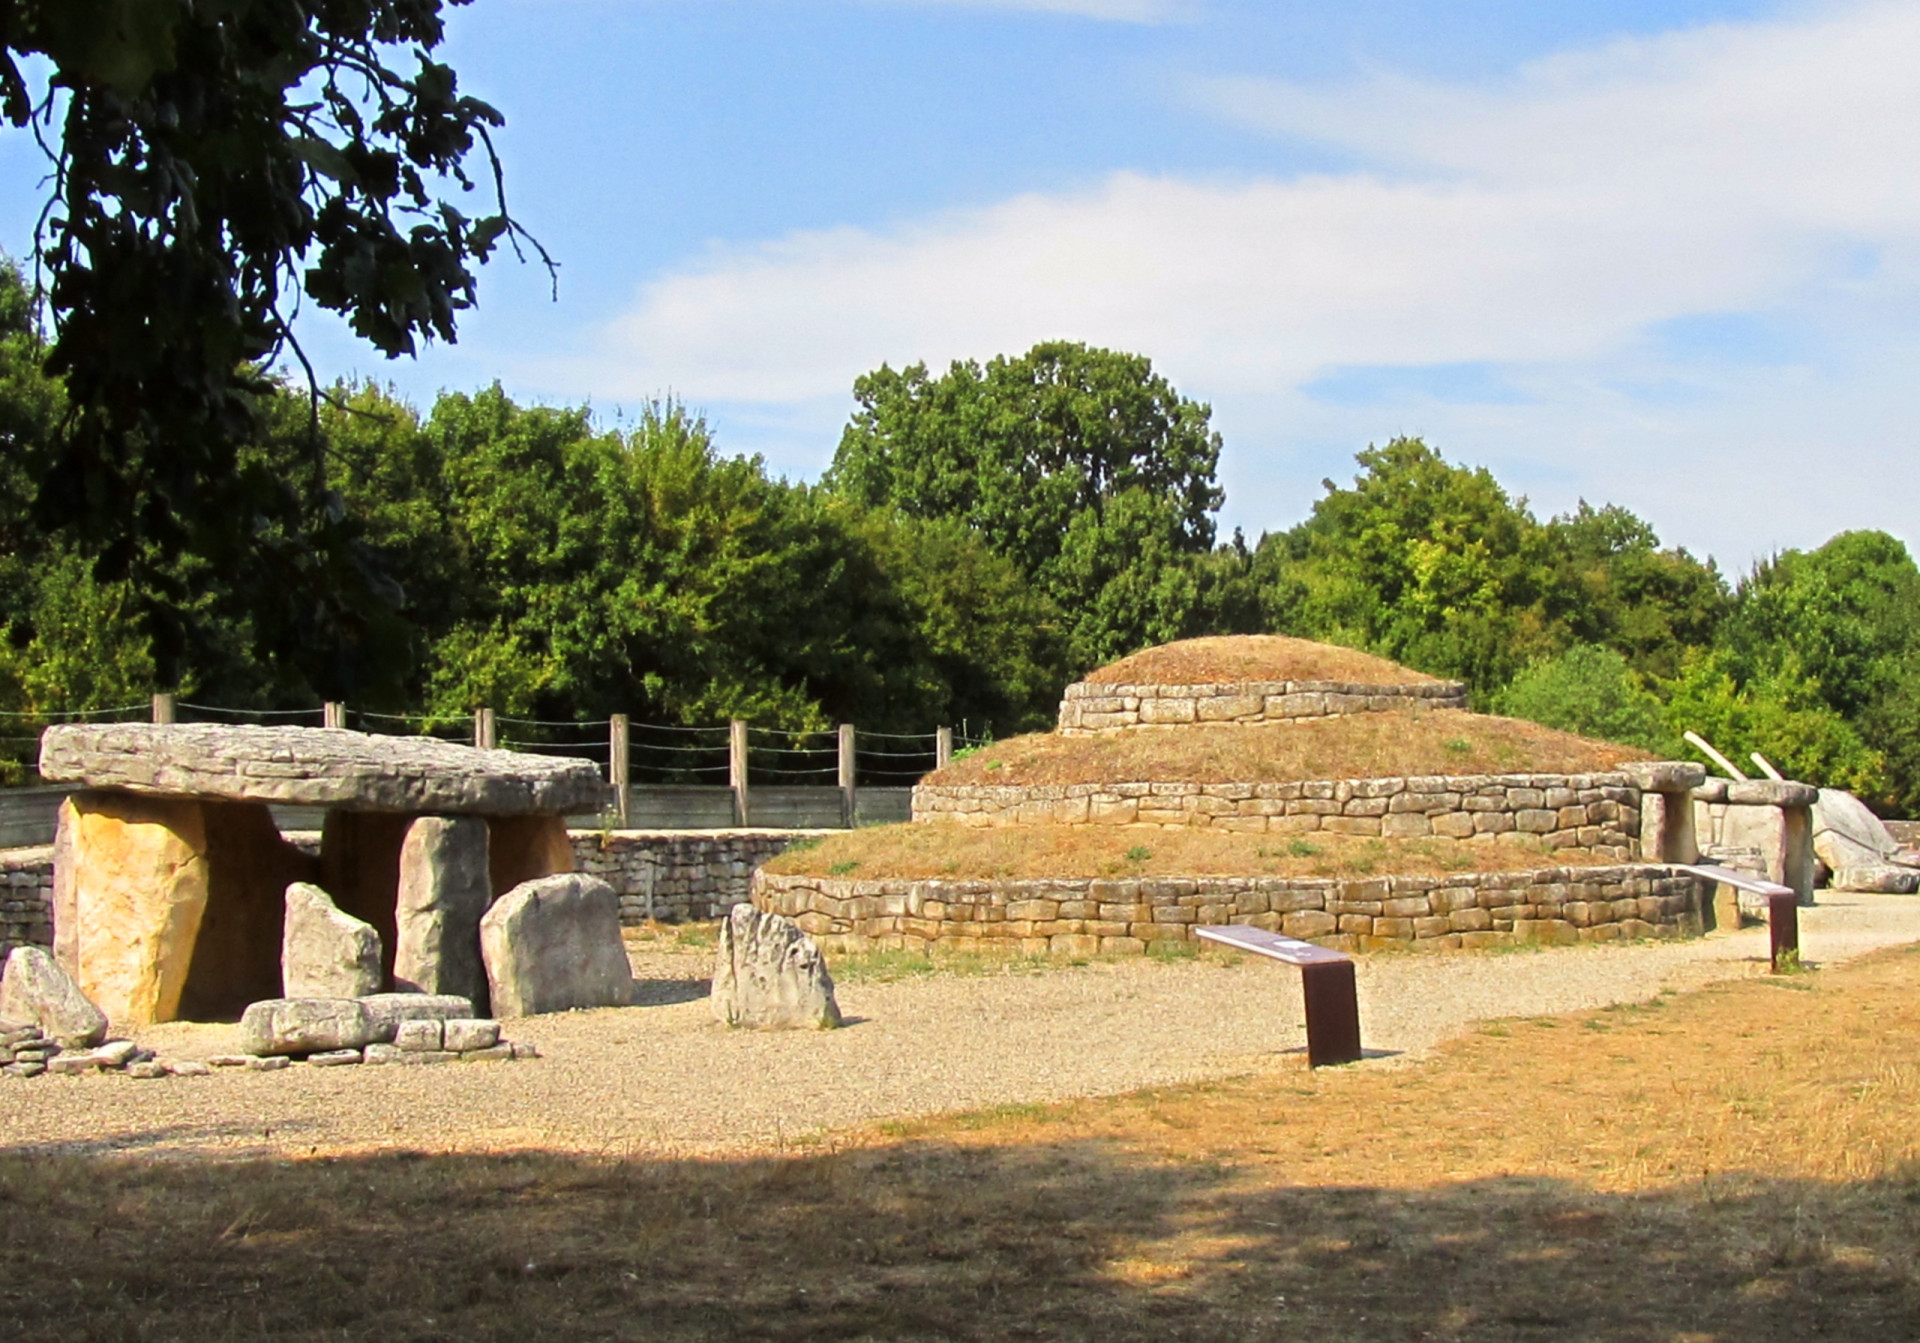 <p>Le Tumulus de Bougon, un groupe de cinq tumulus néolithiques situés en Nouvelle-Aquitaine, en France, est le plus ancien complexe funéraire connu au monde. Les archéologues ont daté le site d'environ 4800 avant notre ère.</p><p><a href="https://www.msn.com/fr-ca/community/channel/vid-7xx8mnucu55yw63we9va2gwr7uihbxwc68fxqp25x6tg4ftibpra?cvid=94631541bc0f4f89bfd59158d696ad7e">Suivez-nous et accédez tous les jours à du contenu exclusif</a></p>